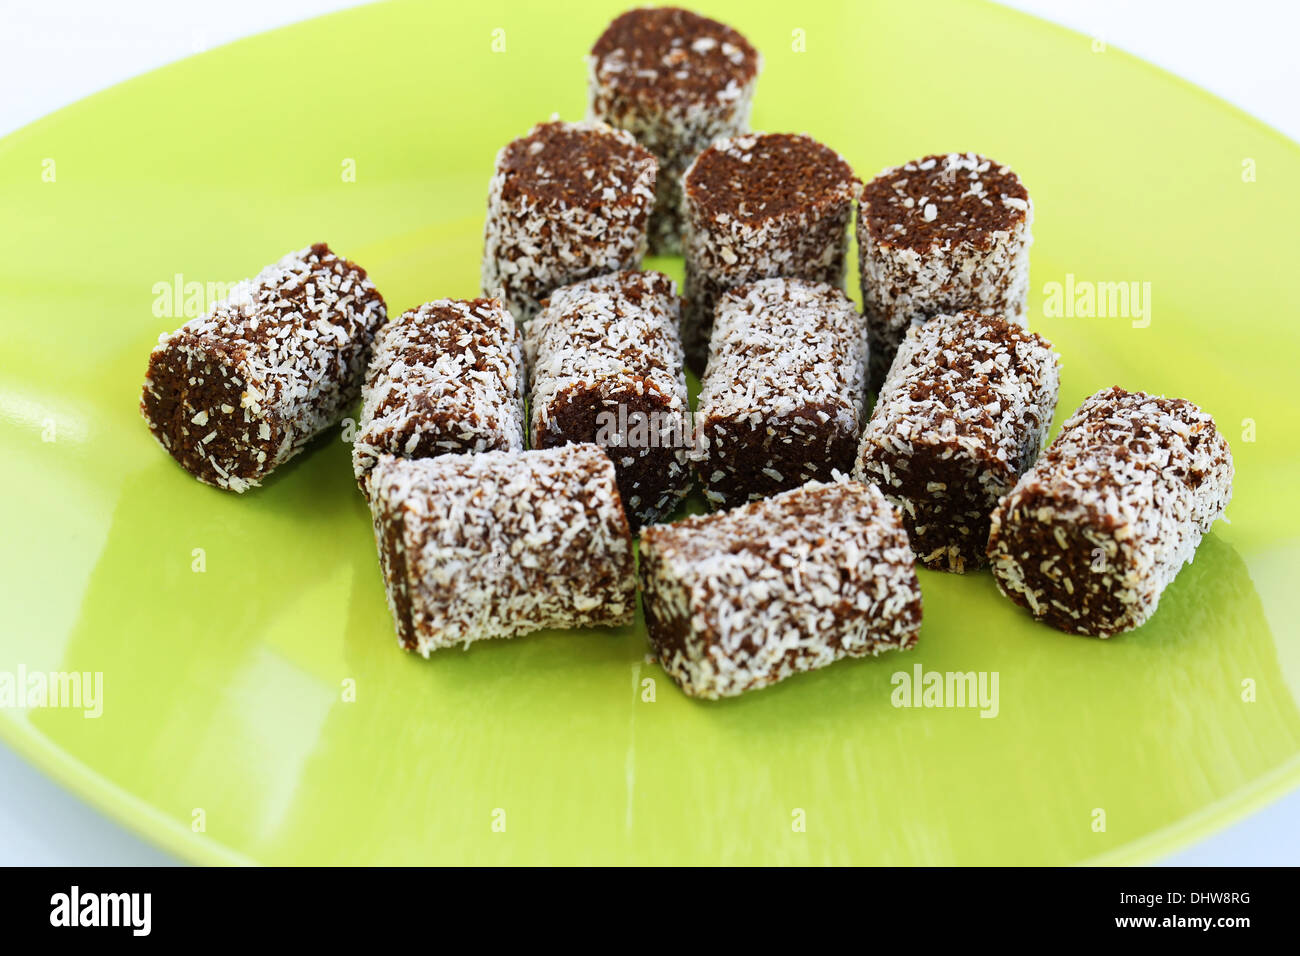 Le noci di cocco e cioccolatini sulla piastra di verde. Foto Stock